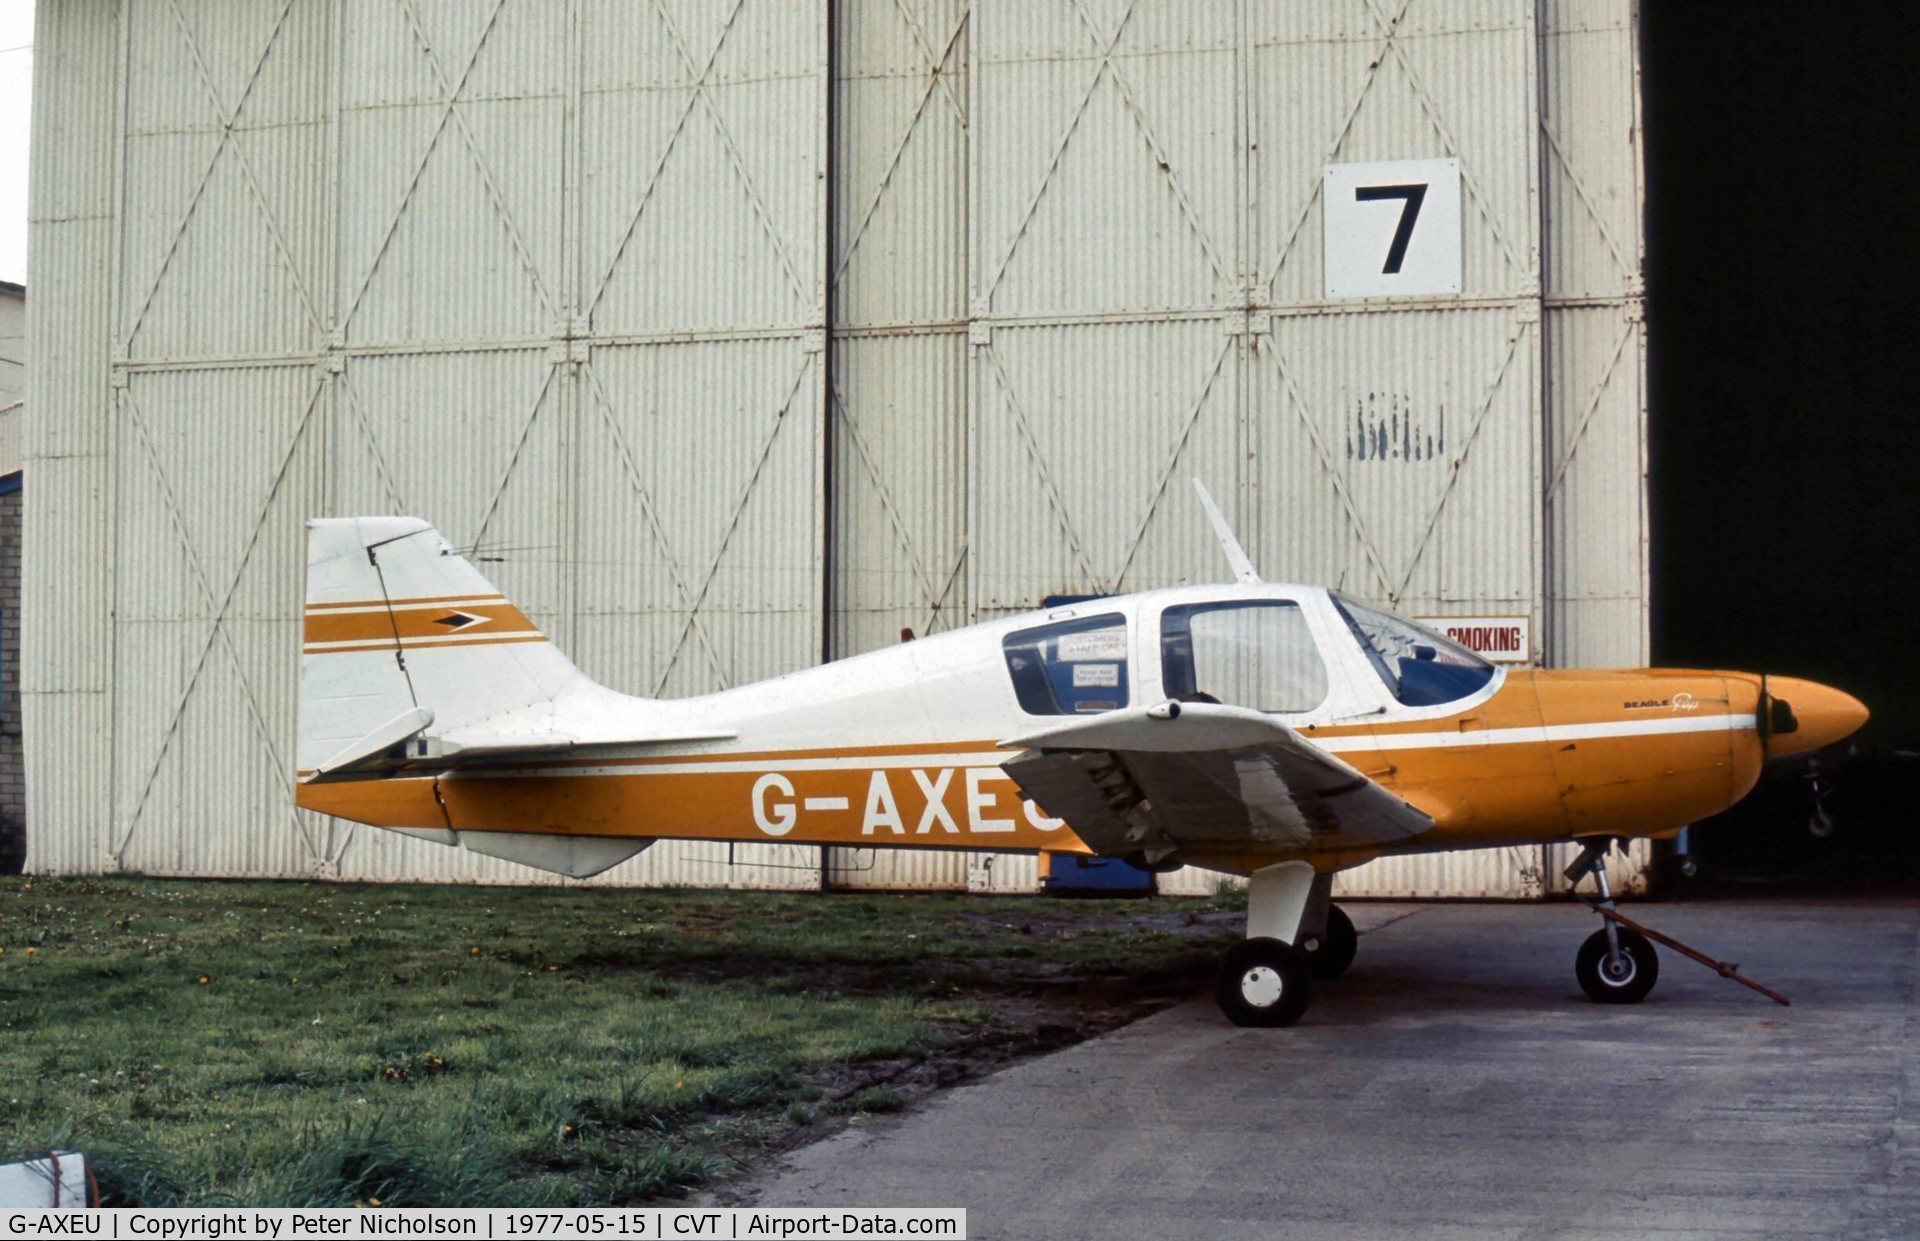 G-AXEU, 1969 Beagle B-121 Pup Series 2 (Pup 150) C/N B121-062, Beagle Pup 2 seen at Coventry Airport in May 1977.